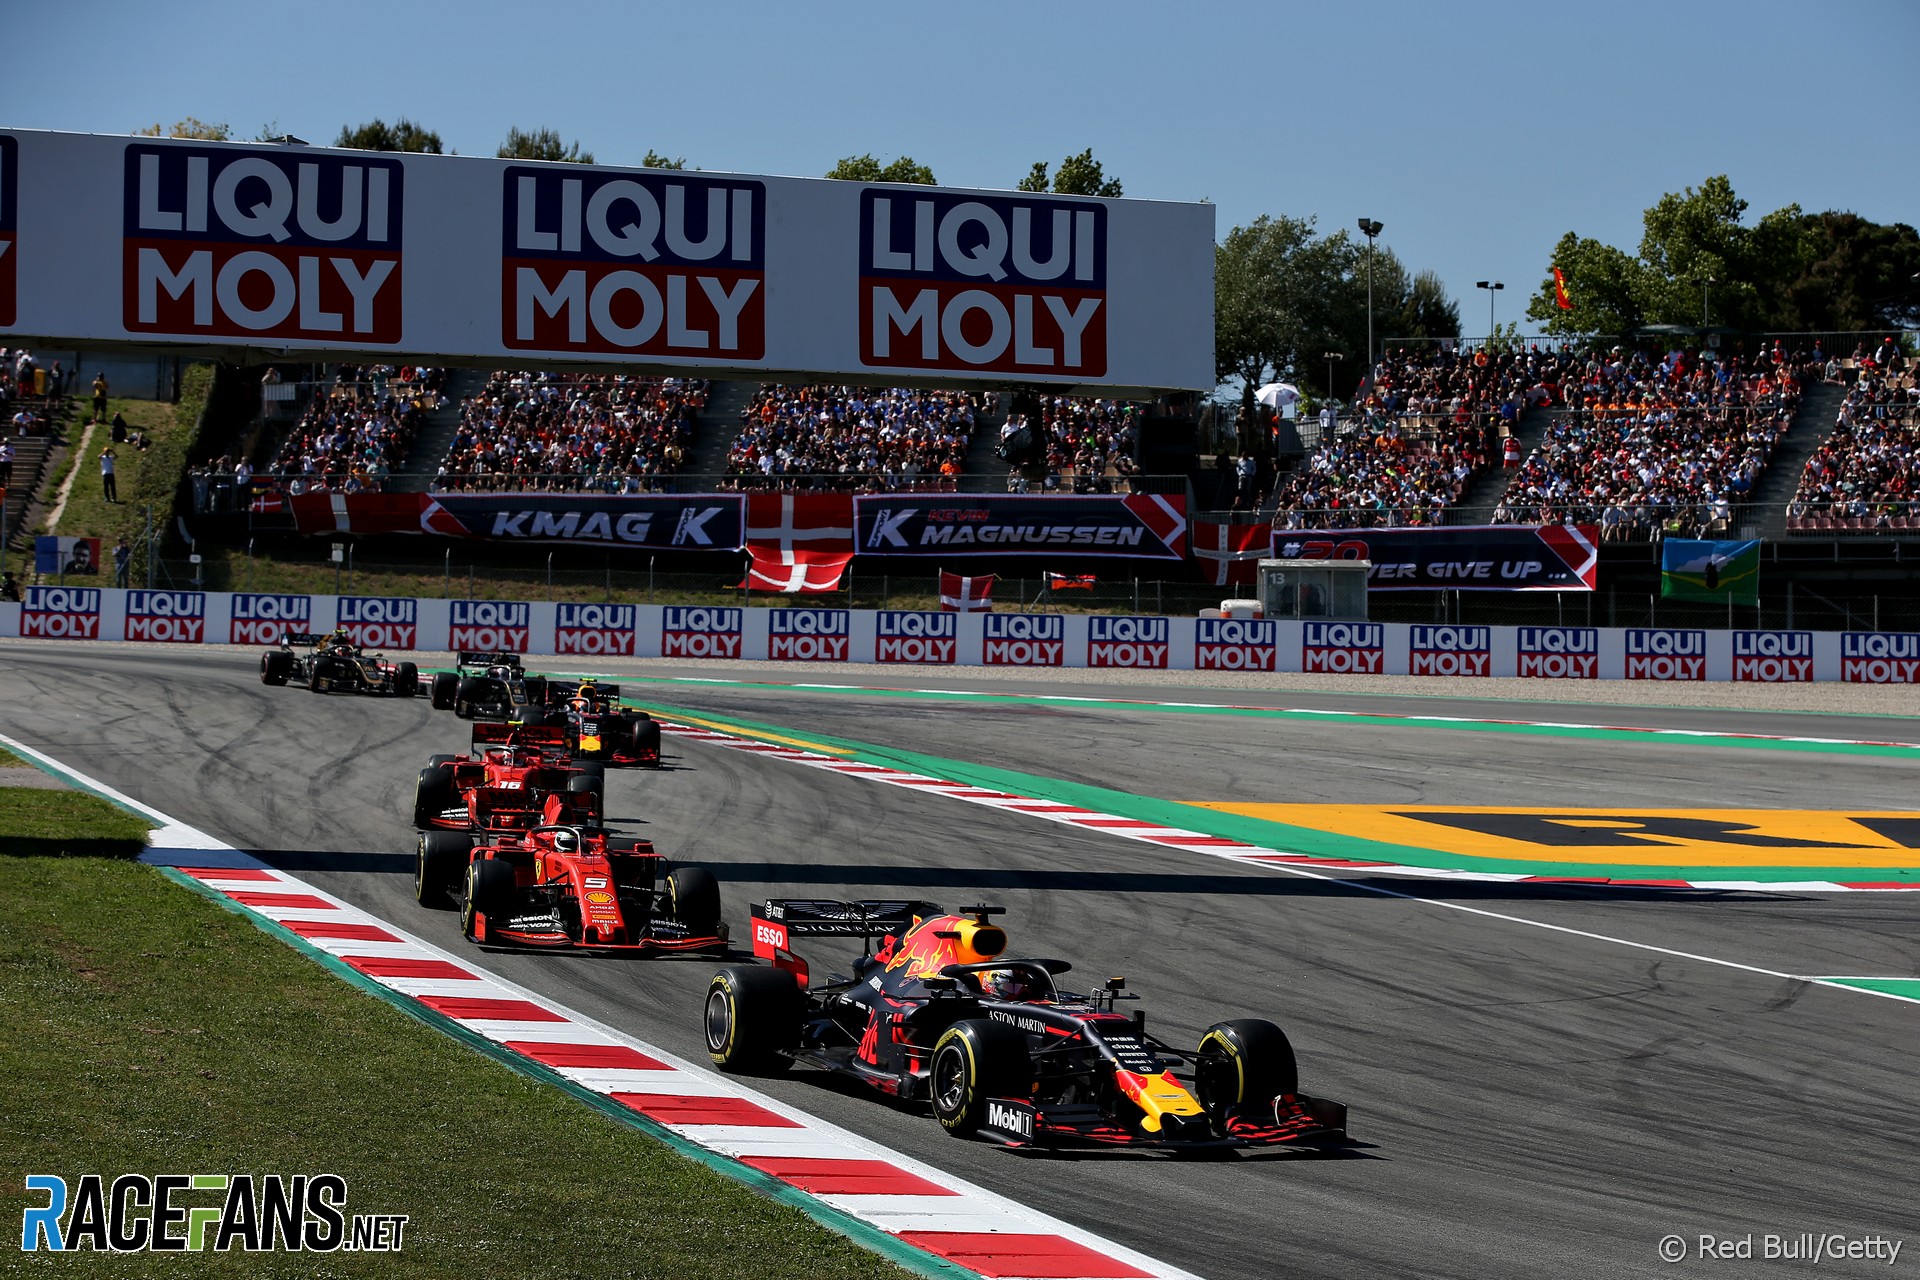 Max Verstappen, Red Bull, Circuit de Catalunya, 2019